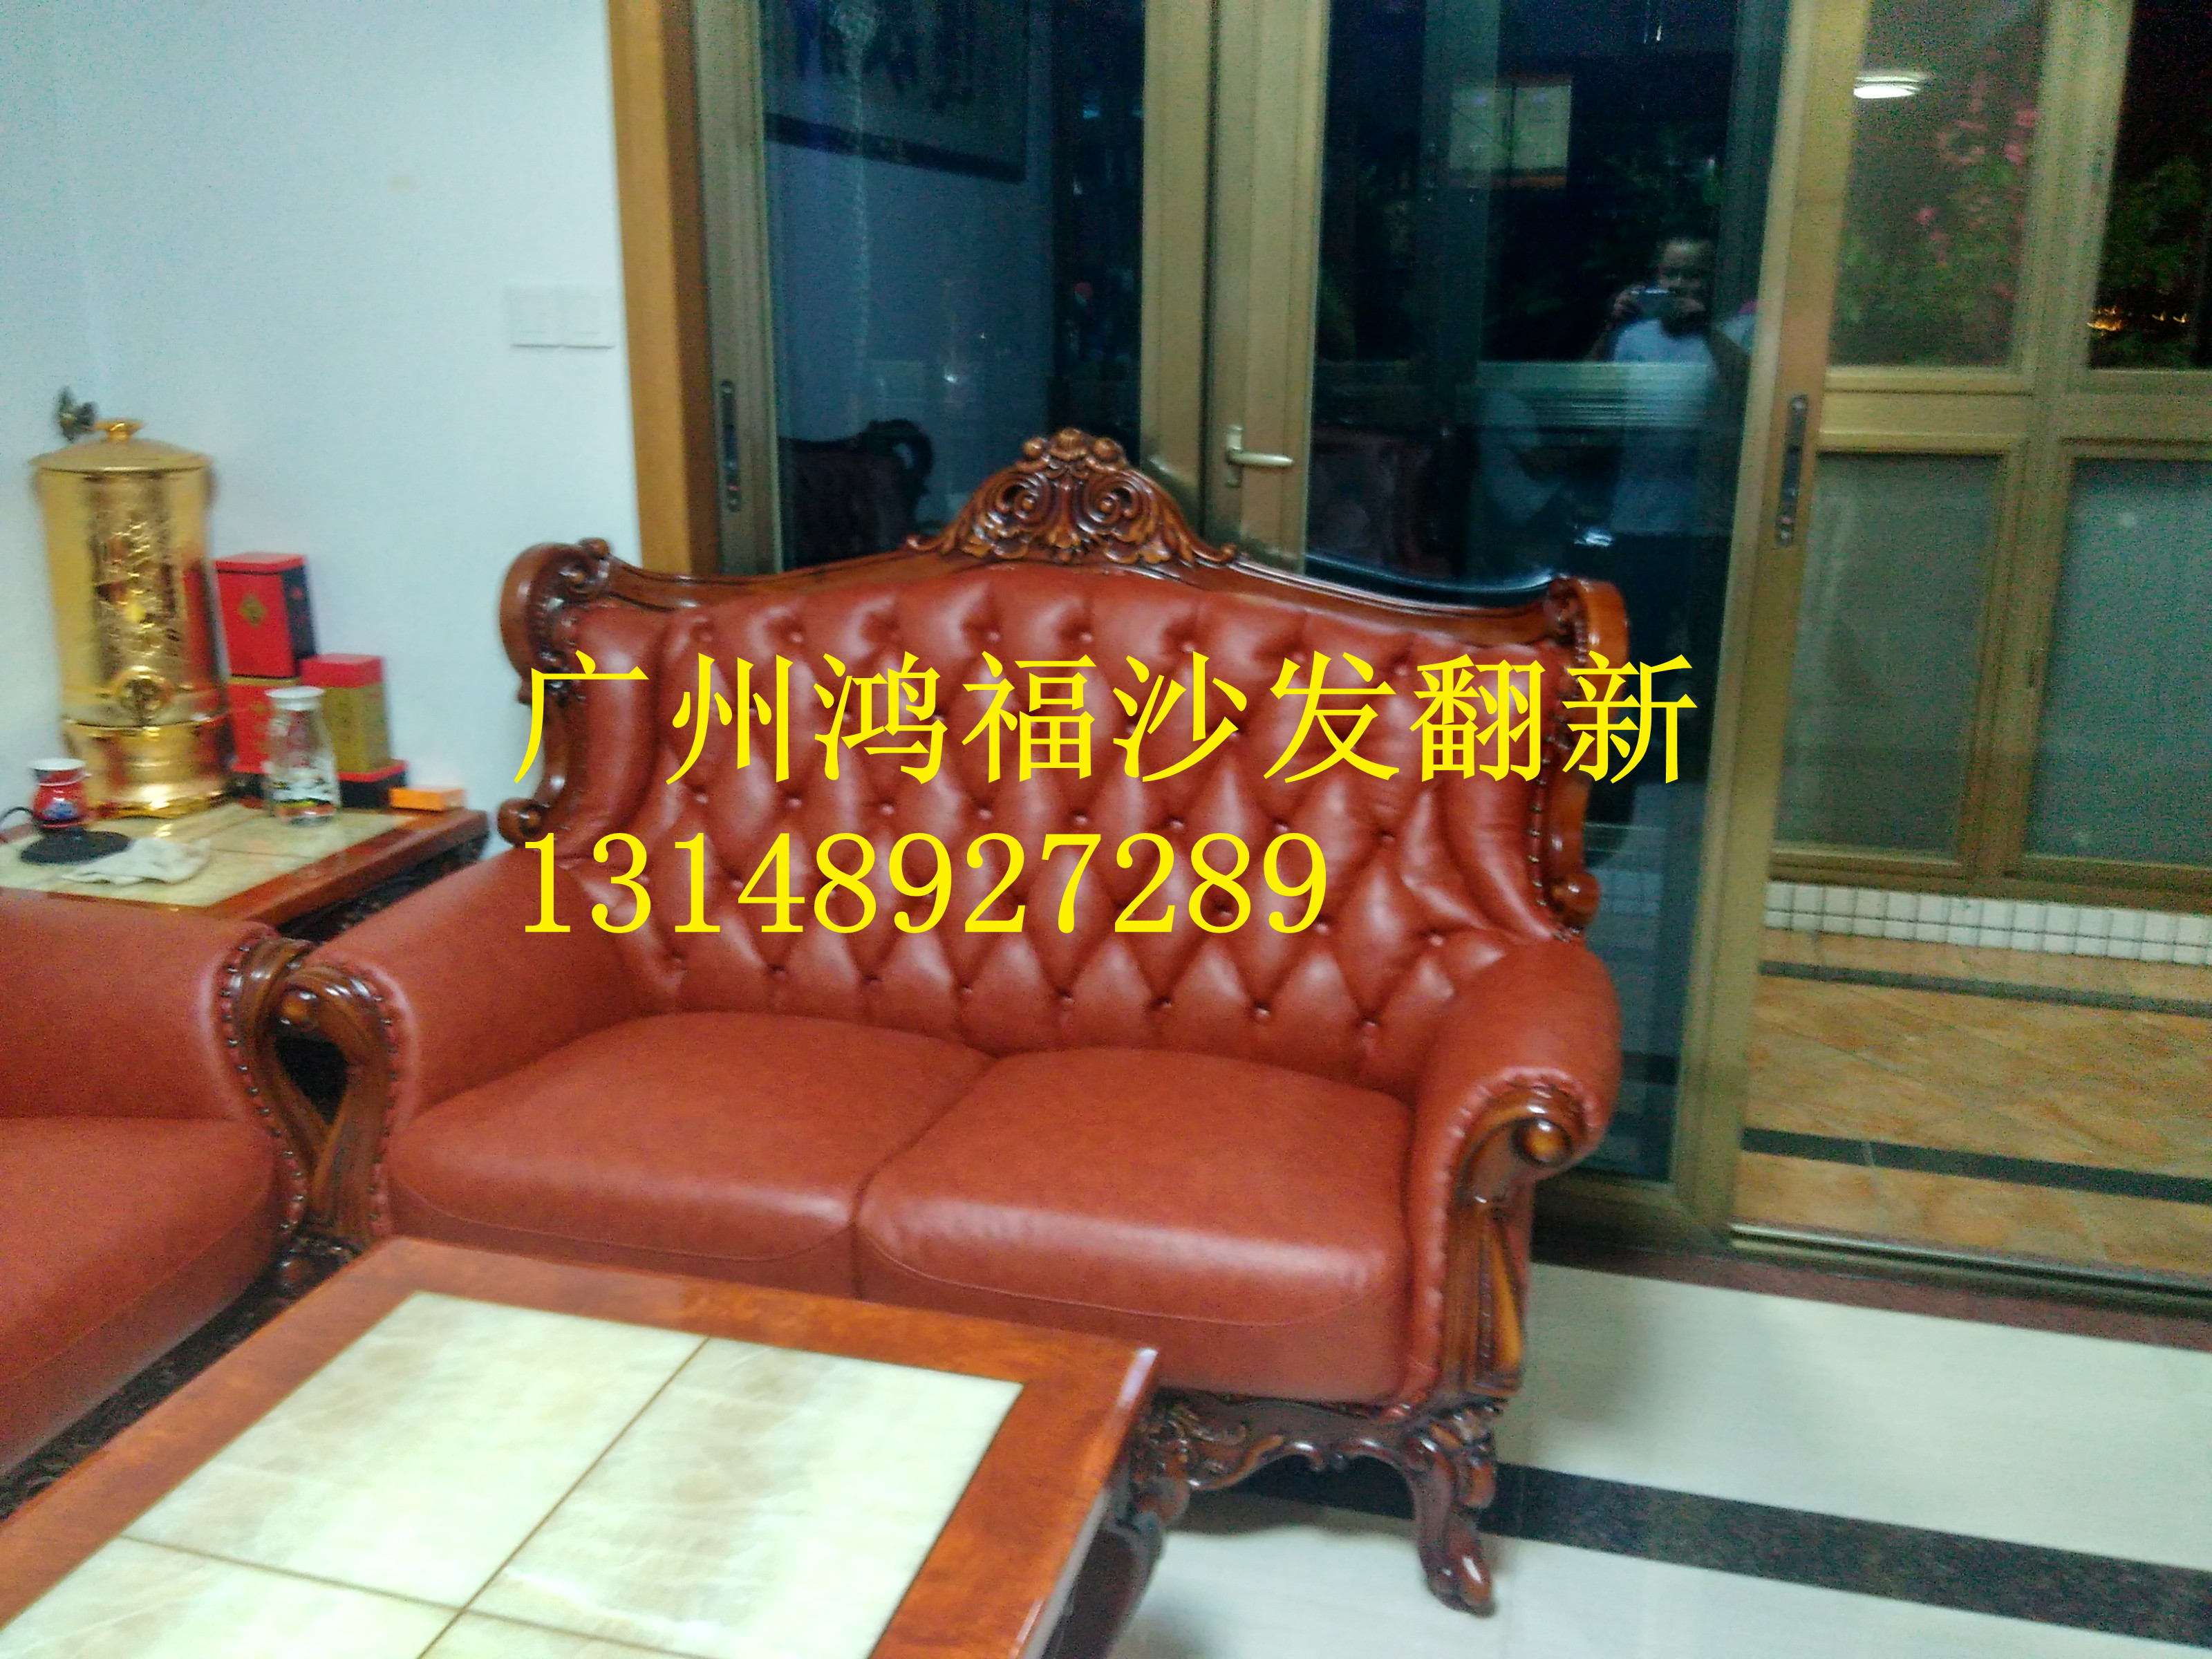 供应用于沙发的广州番禺区沙发维修换皮换布、家庭沙发、大班椅、KTV沙发、沐足桑拿椅、